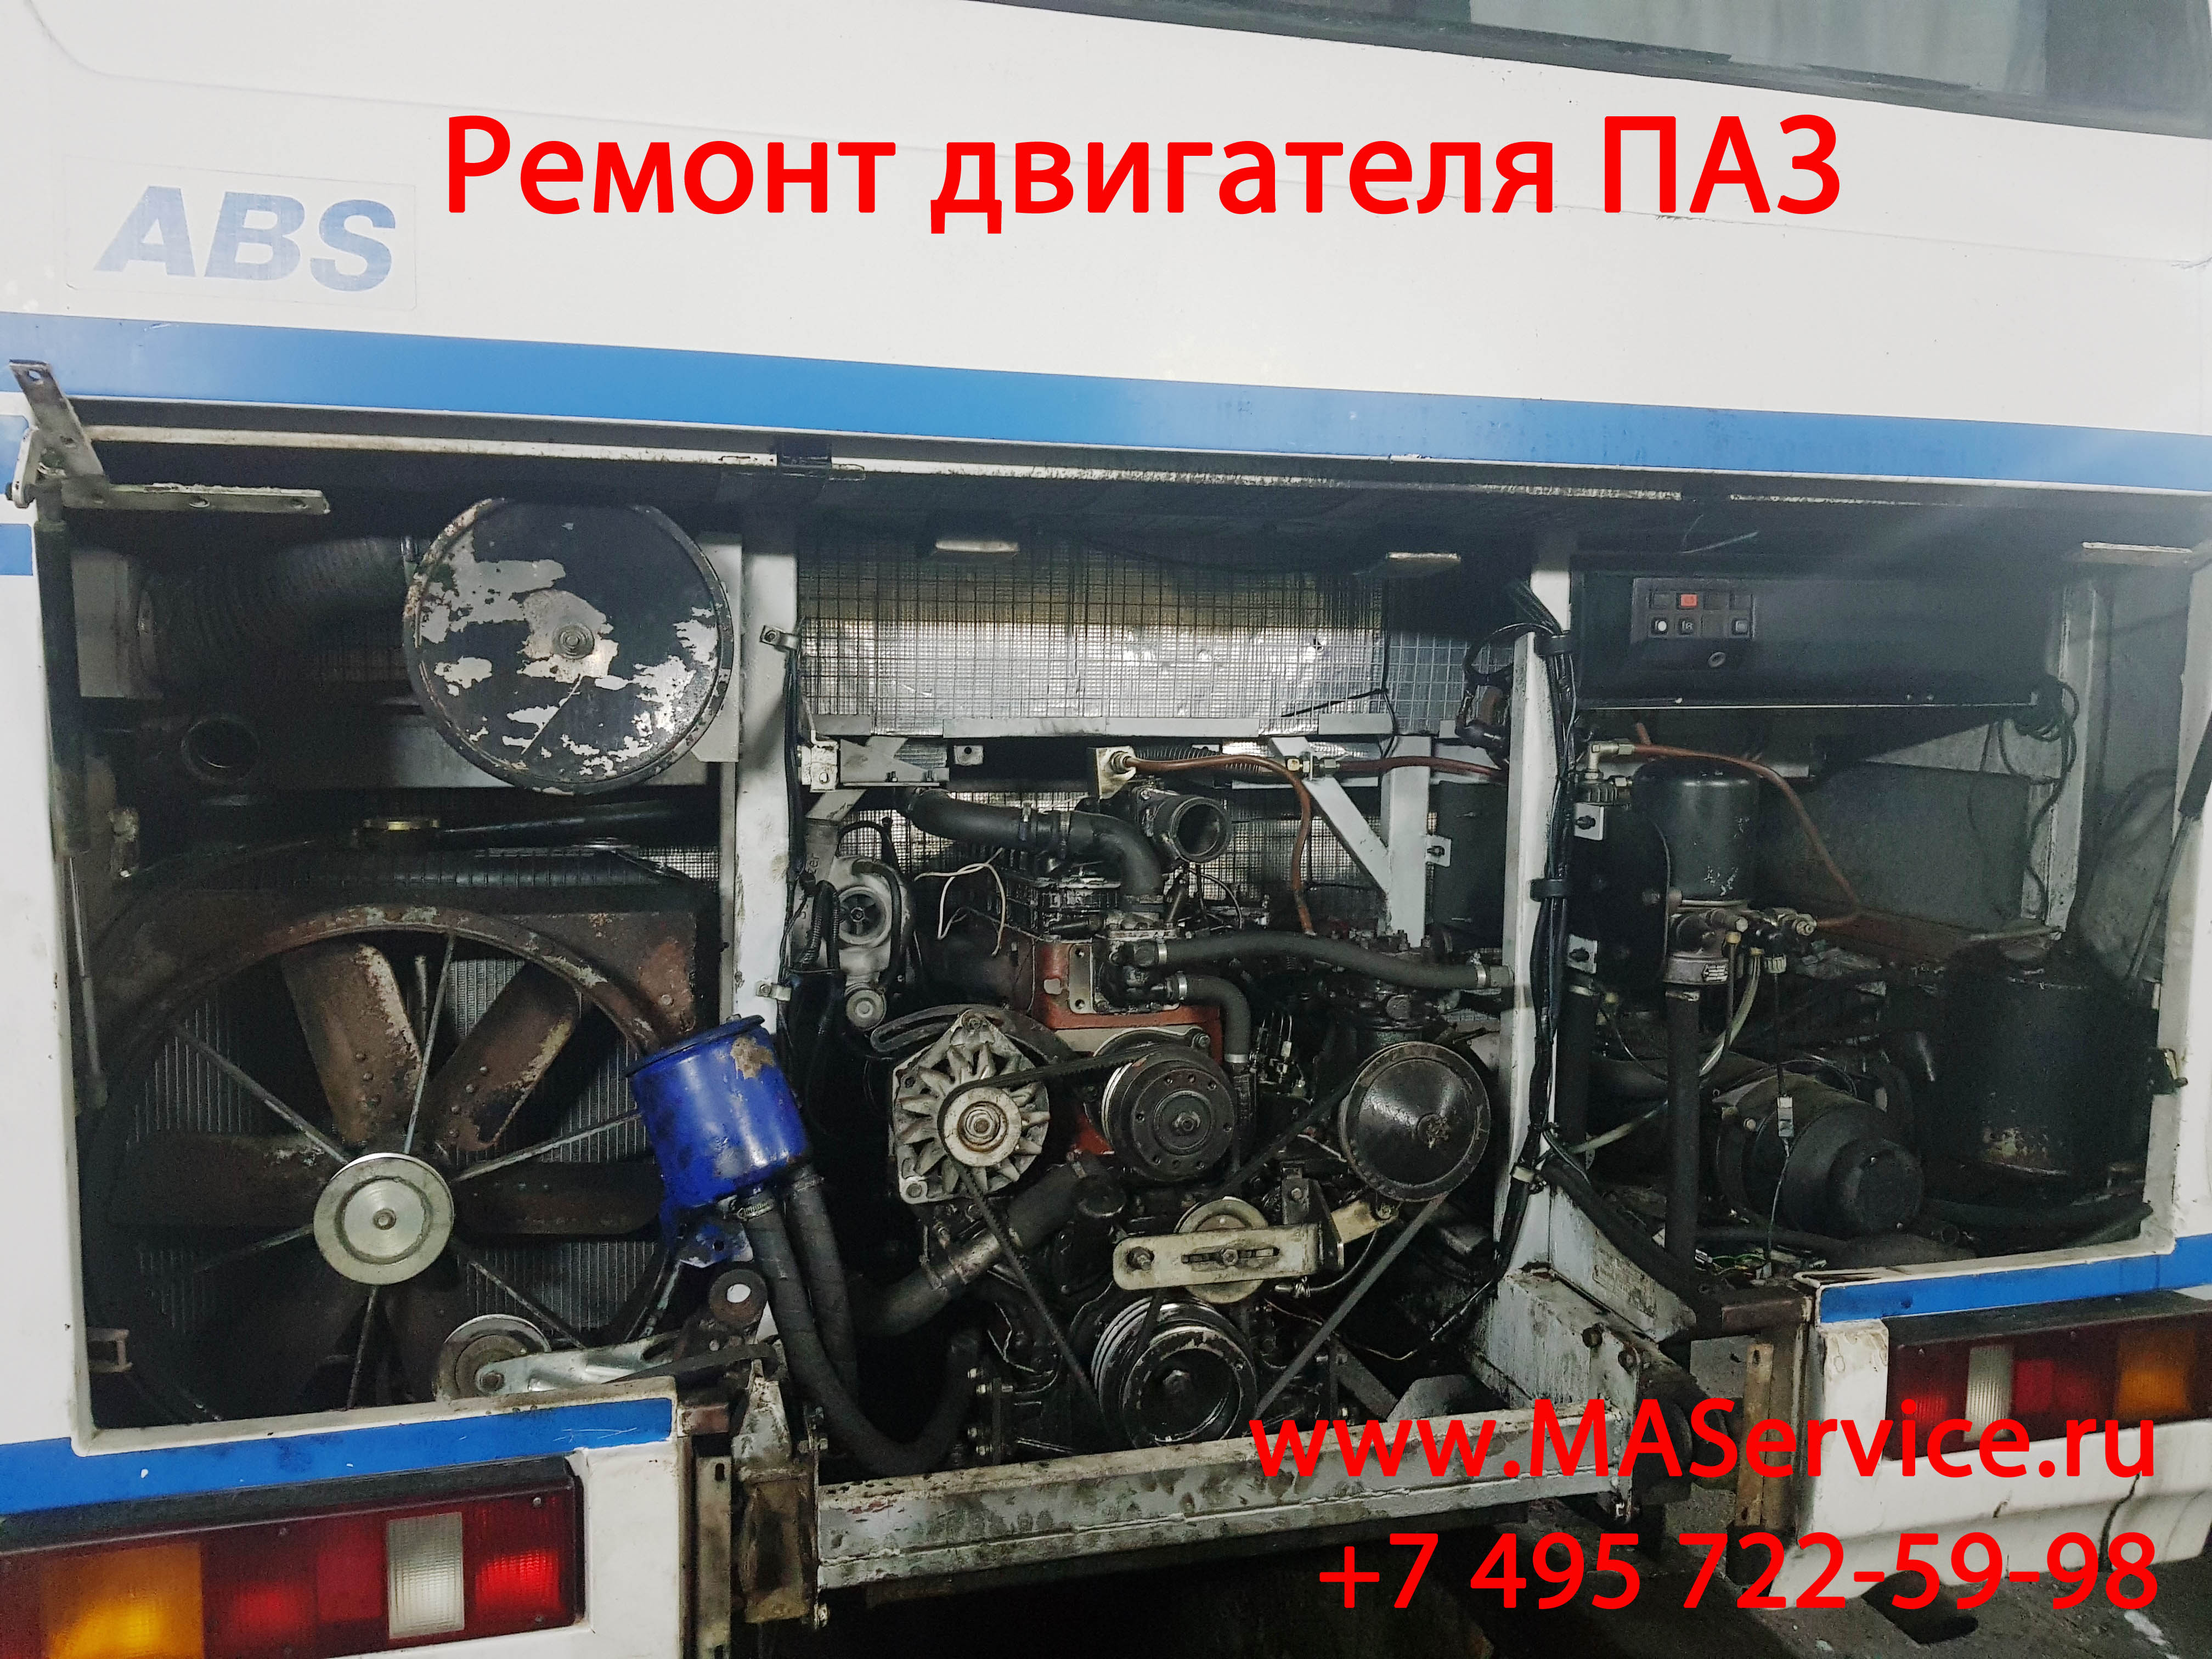 Услуги ремонта двигателя 245